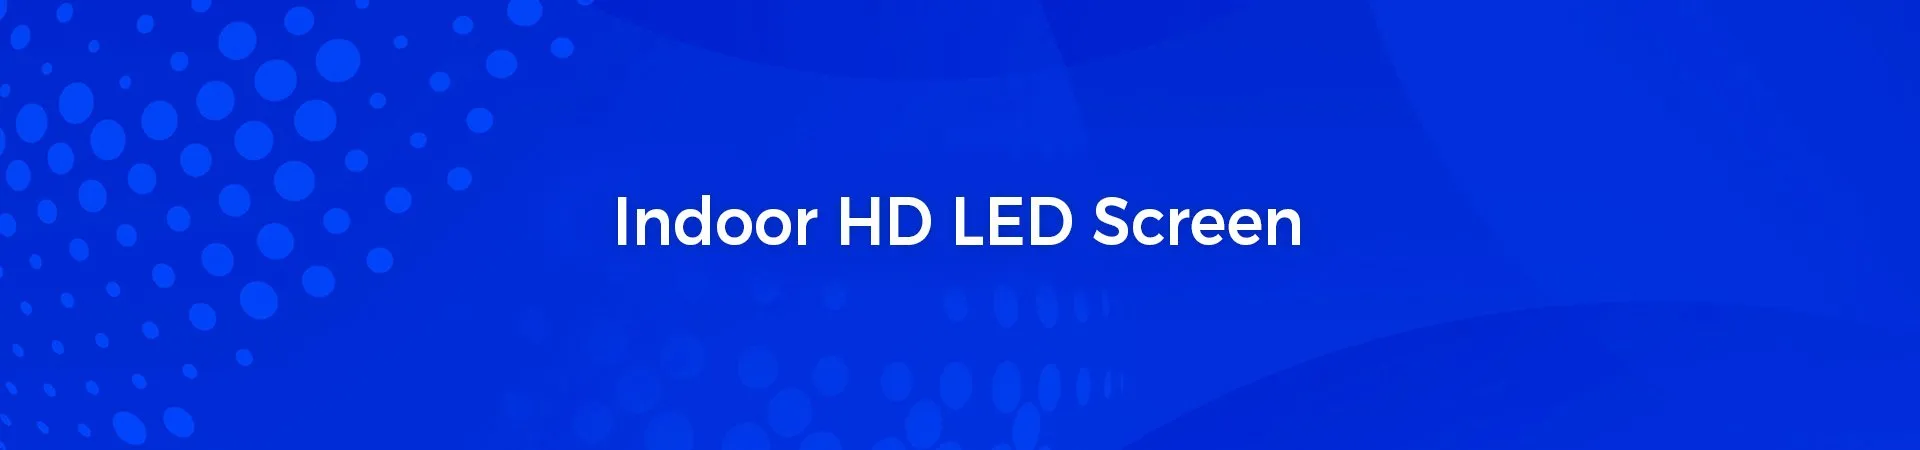 Pantalla LED de alta definición para interiores